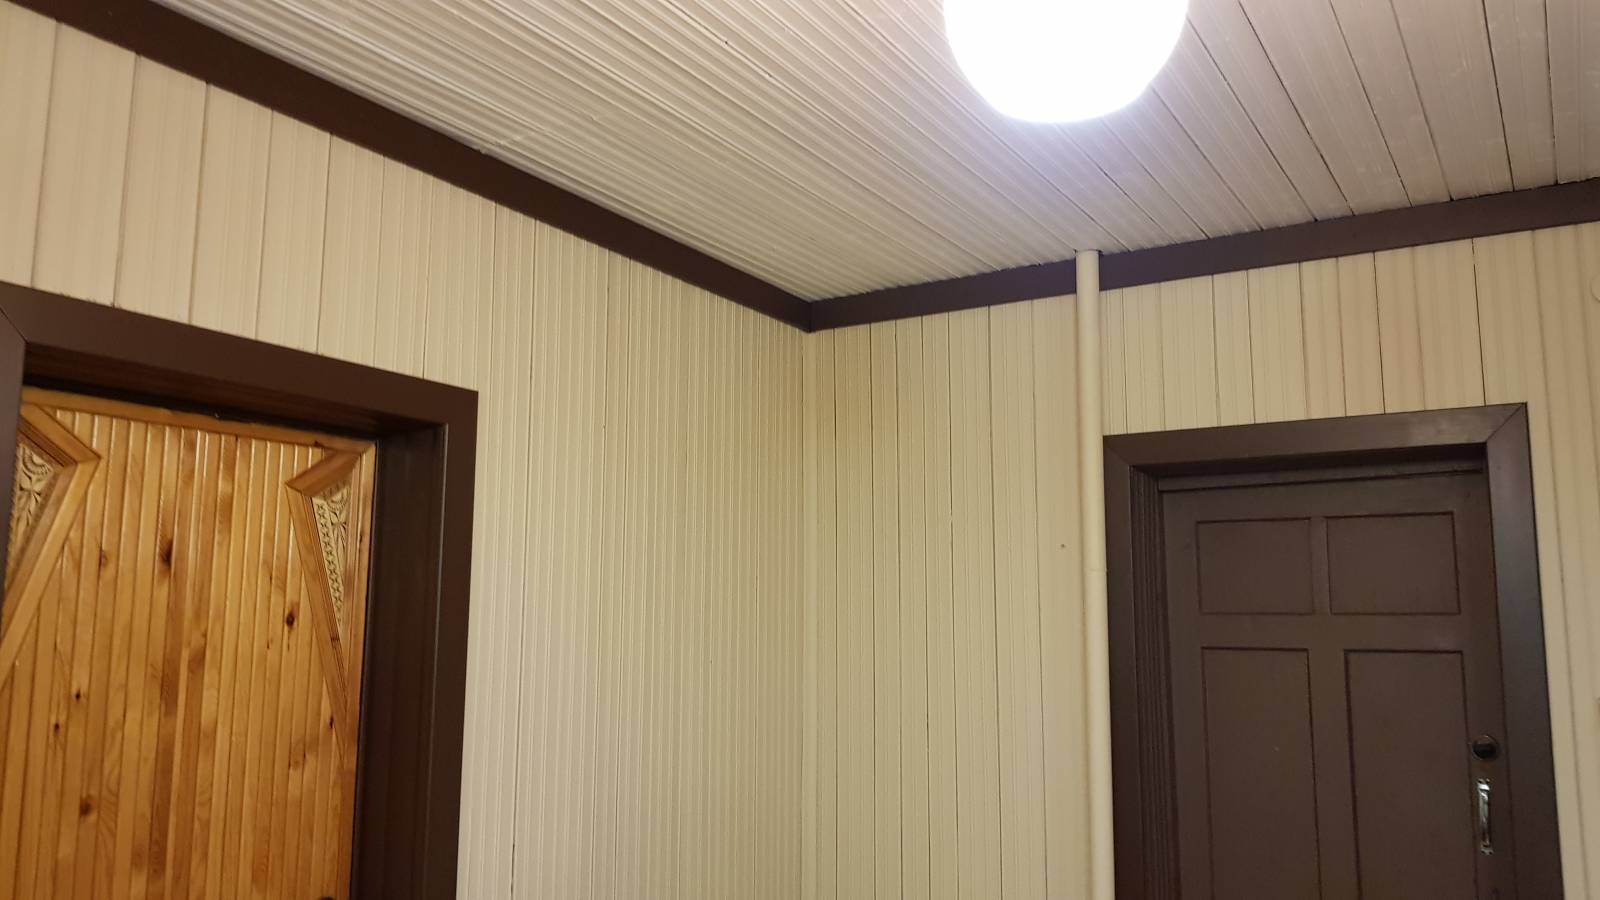 Монтаж мдф панелей на потолок – отделка и обшивка